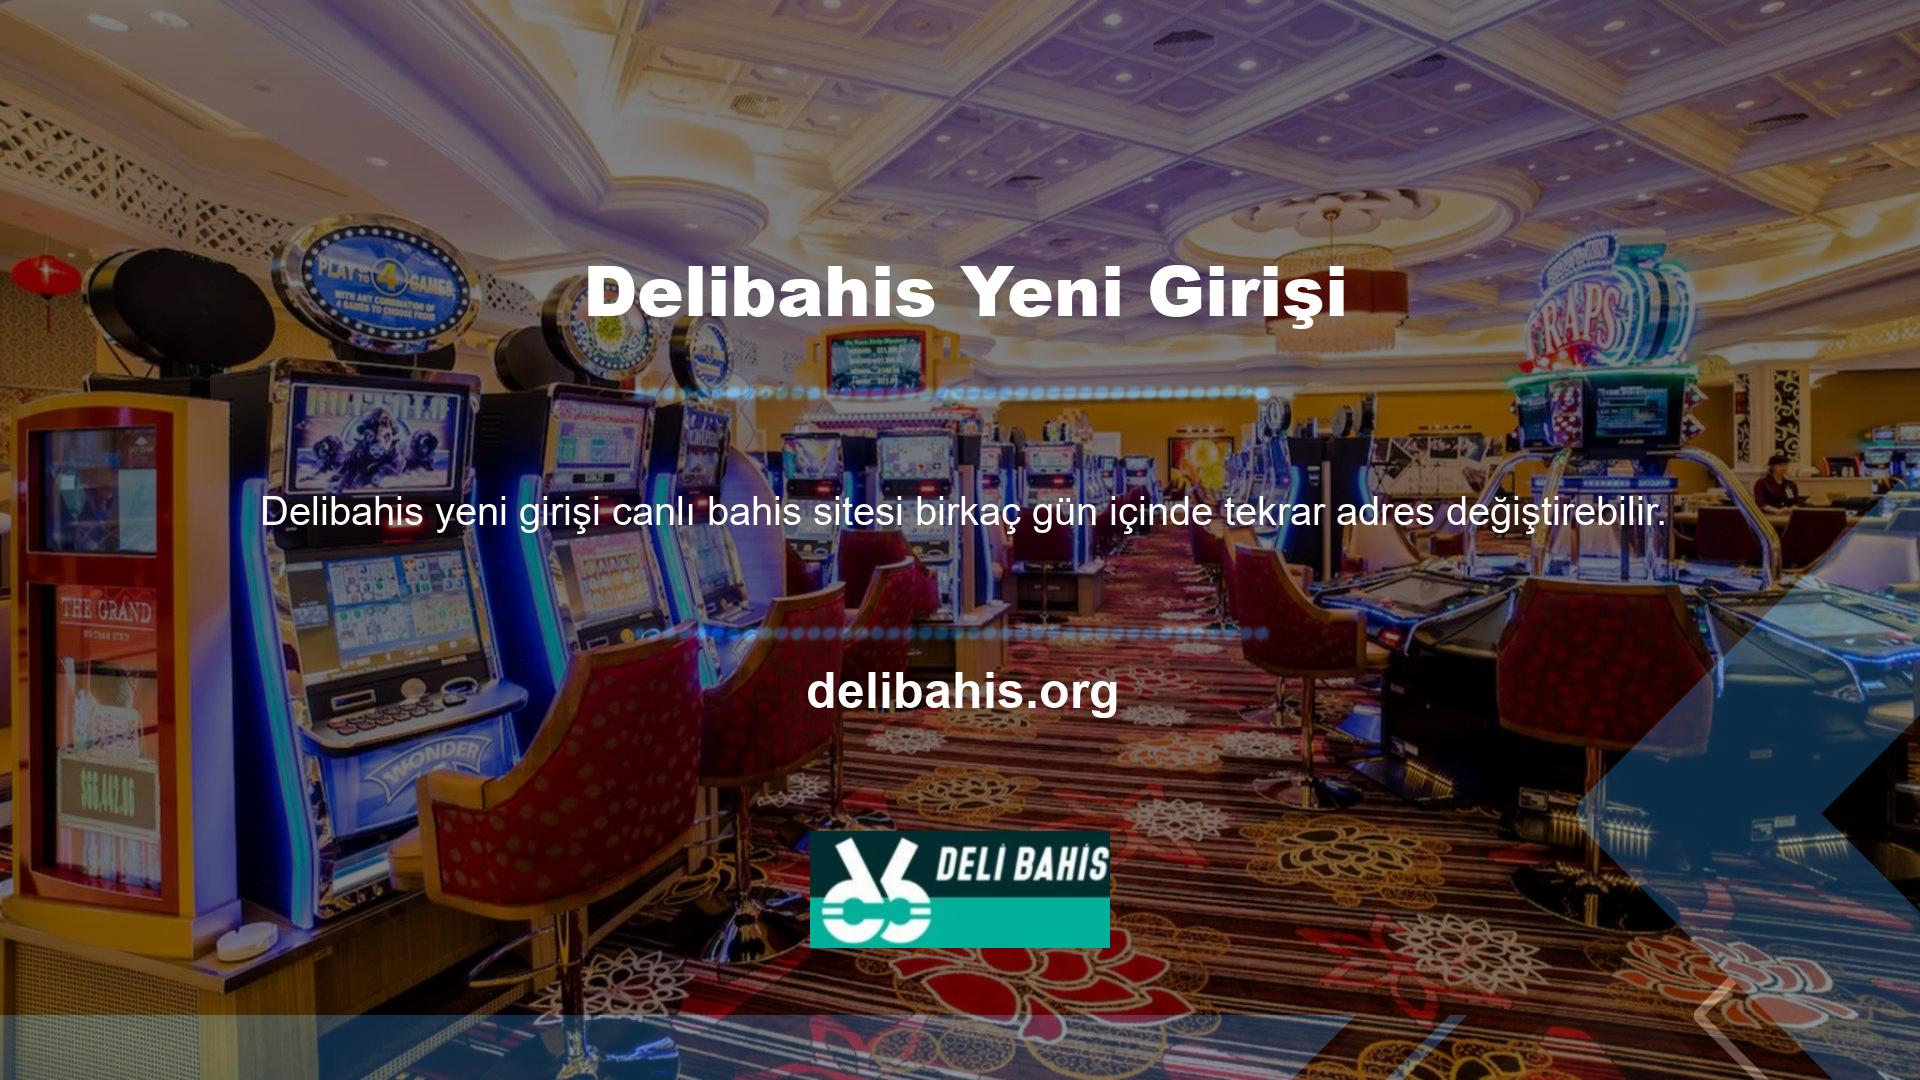 Bu kez web sitesi adresi Delibahis olarak ve yeni giriş adresi Delibahis olarak ayarlanmıştır